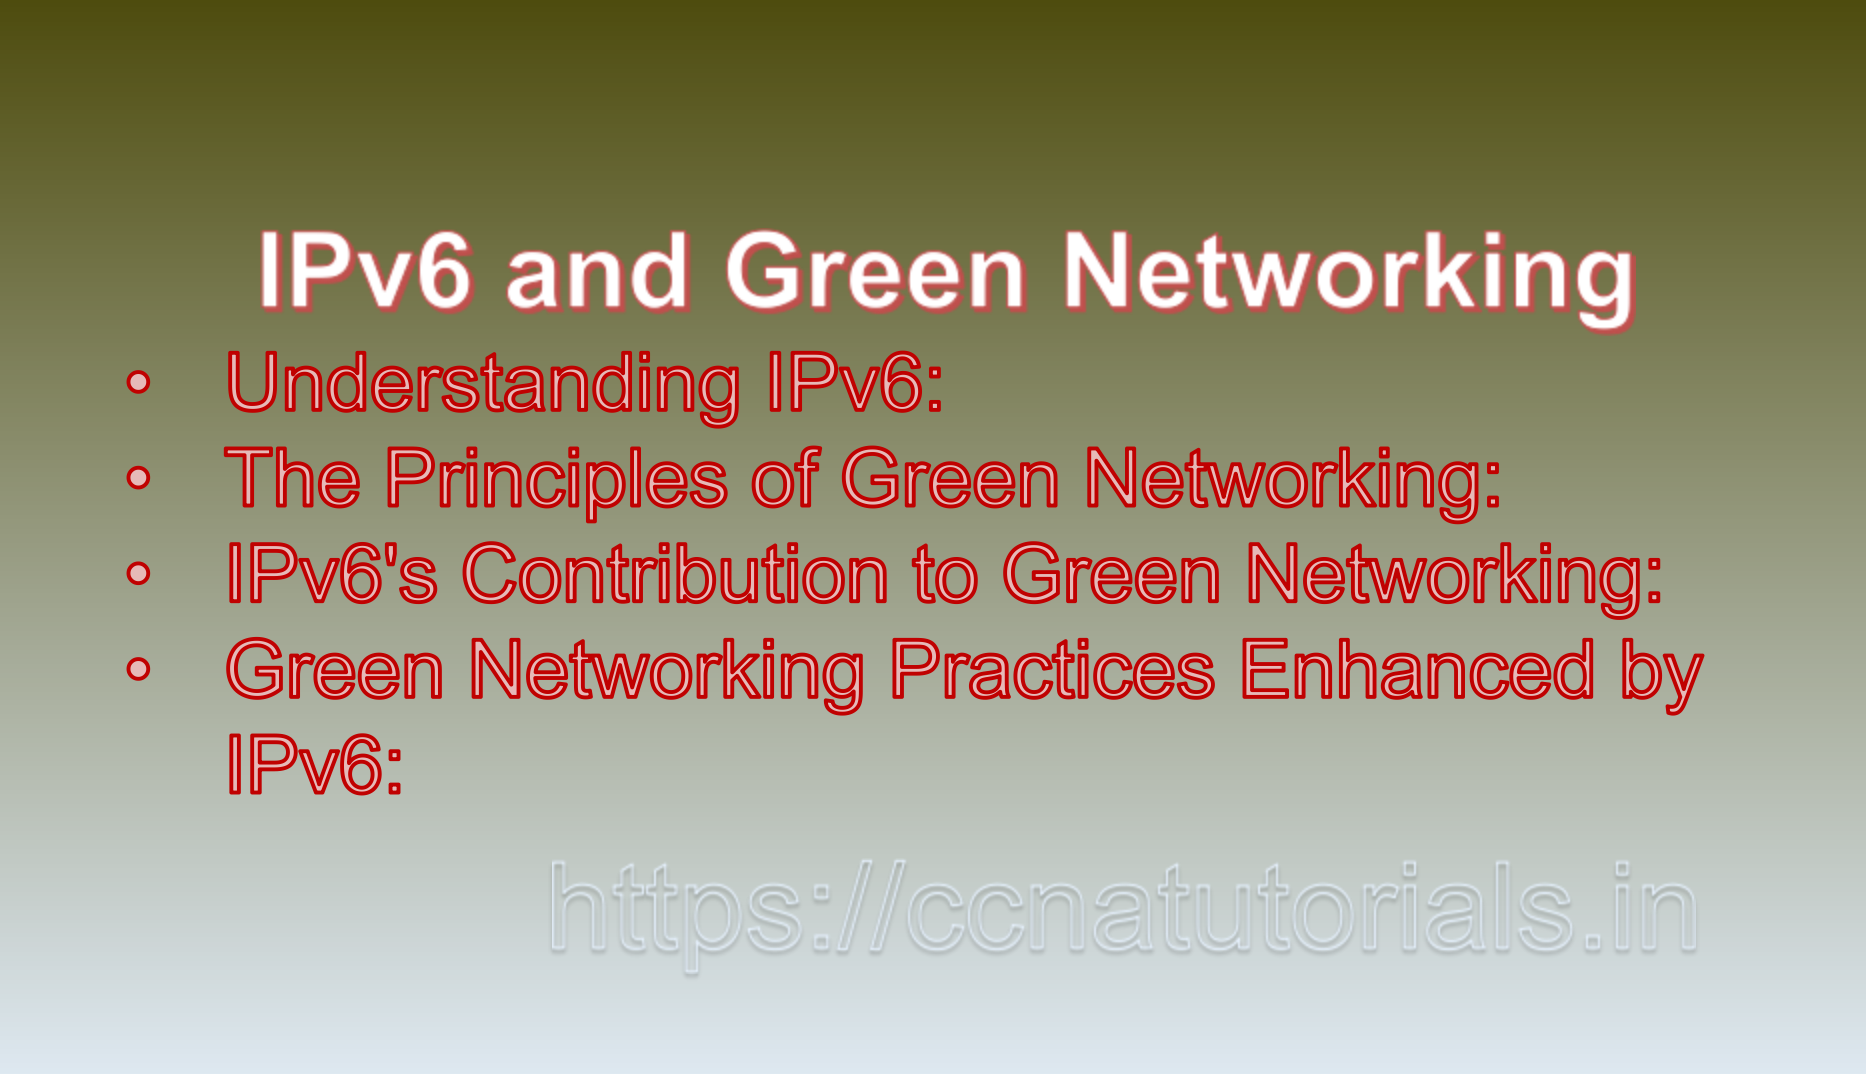 IPv6 and Green Networking, CCNA, CCNA TUTORIALS